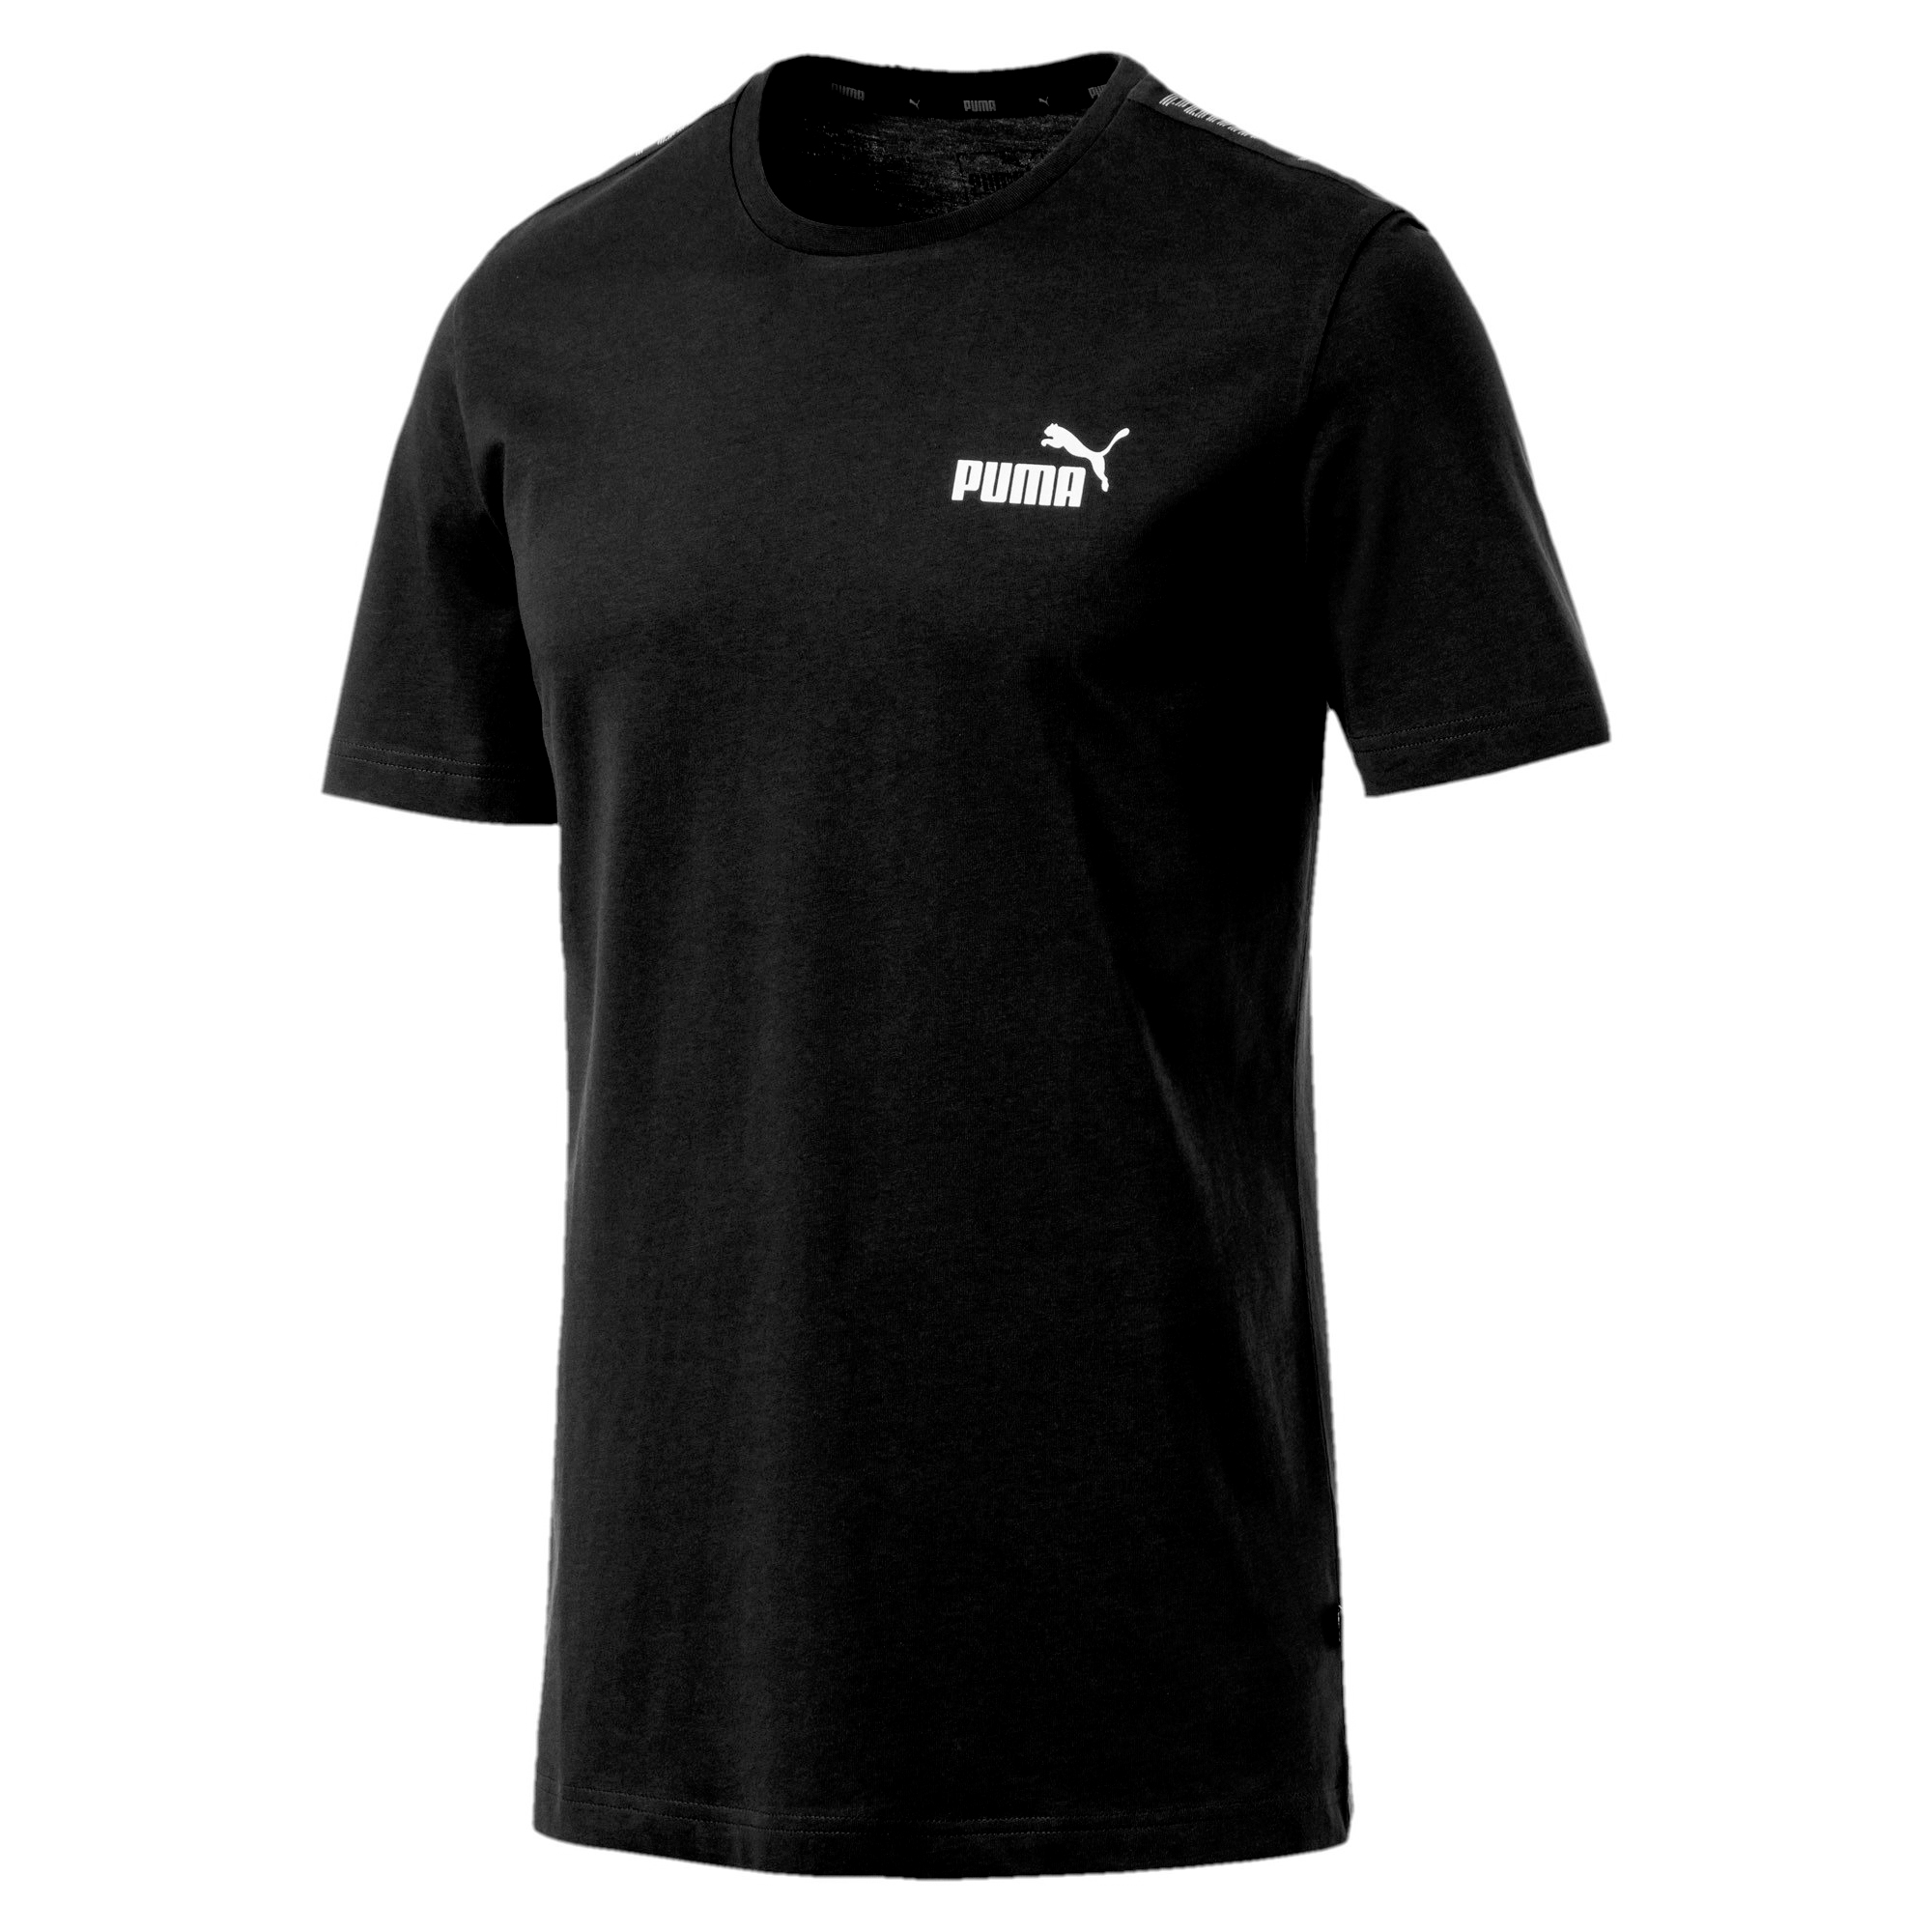 PUMA Herren Amplified Tee T-Shirt schwarz 854655 01